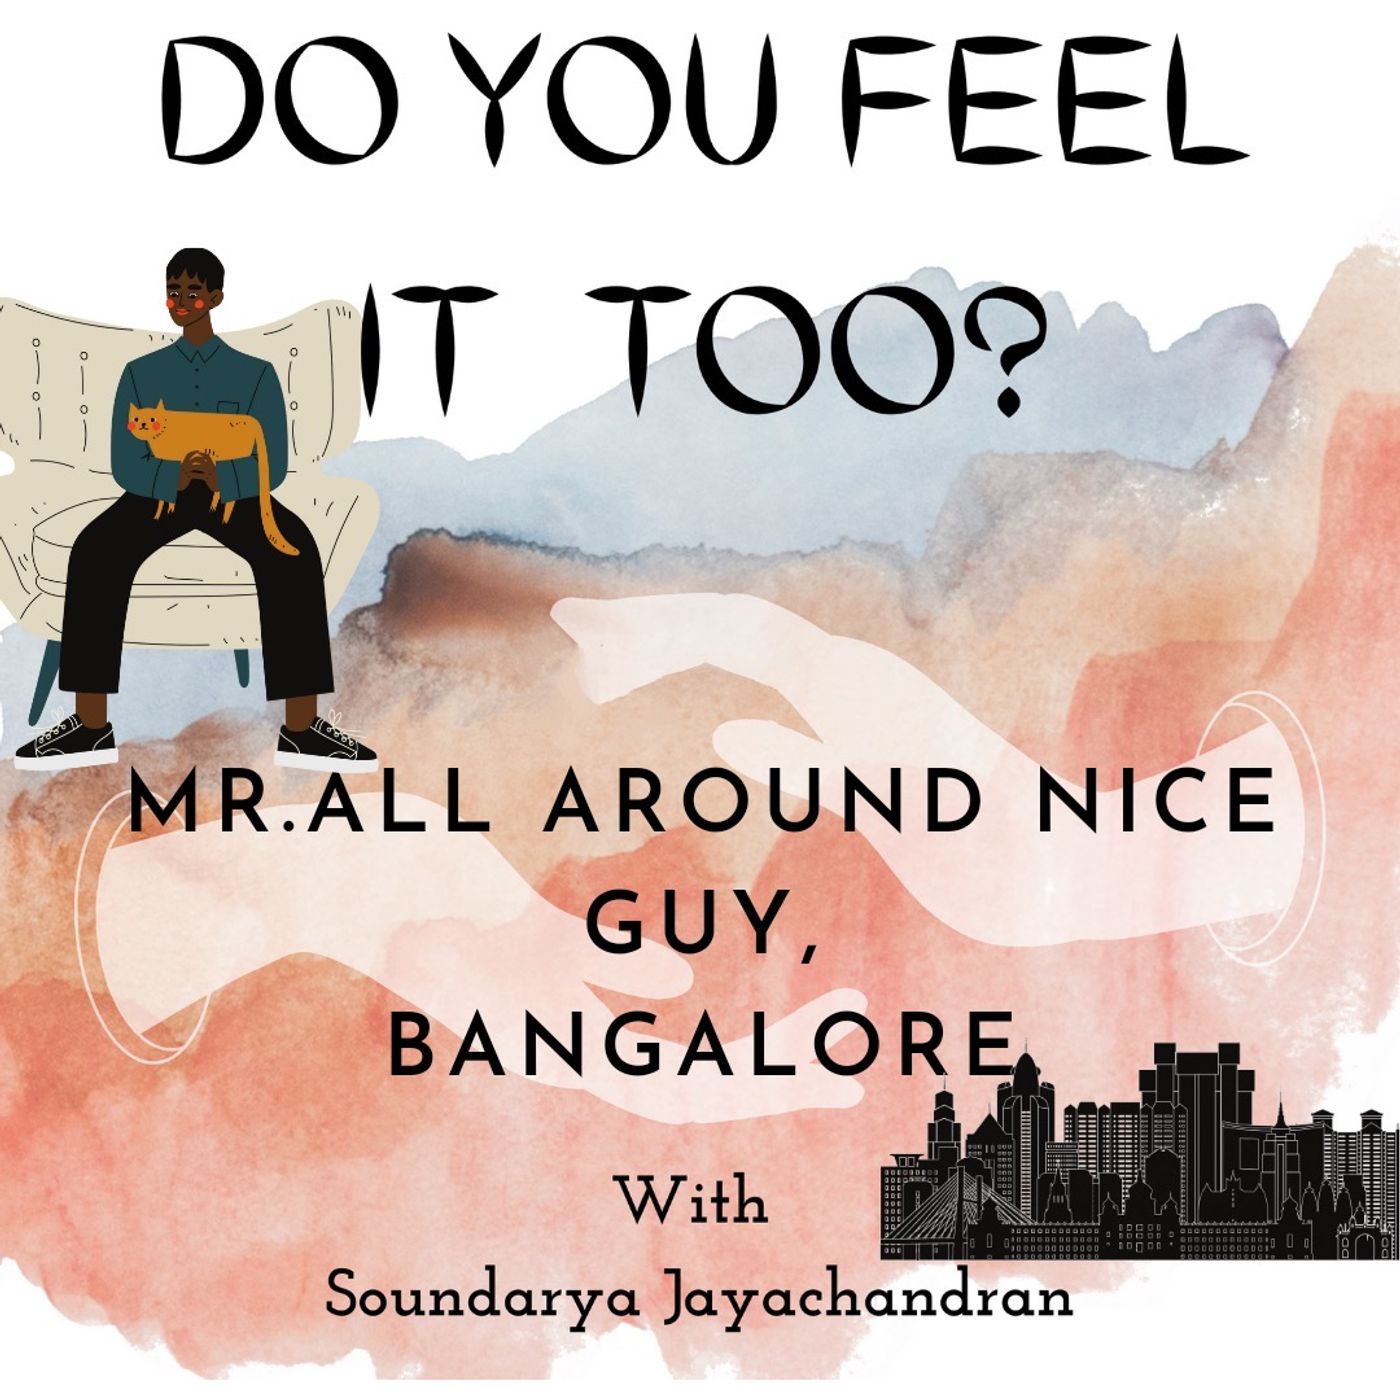 All Around Nice Guy, Bangalore